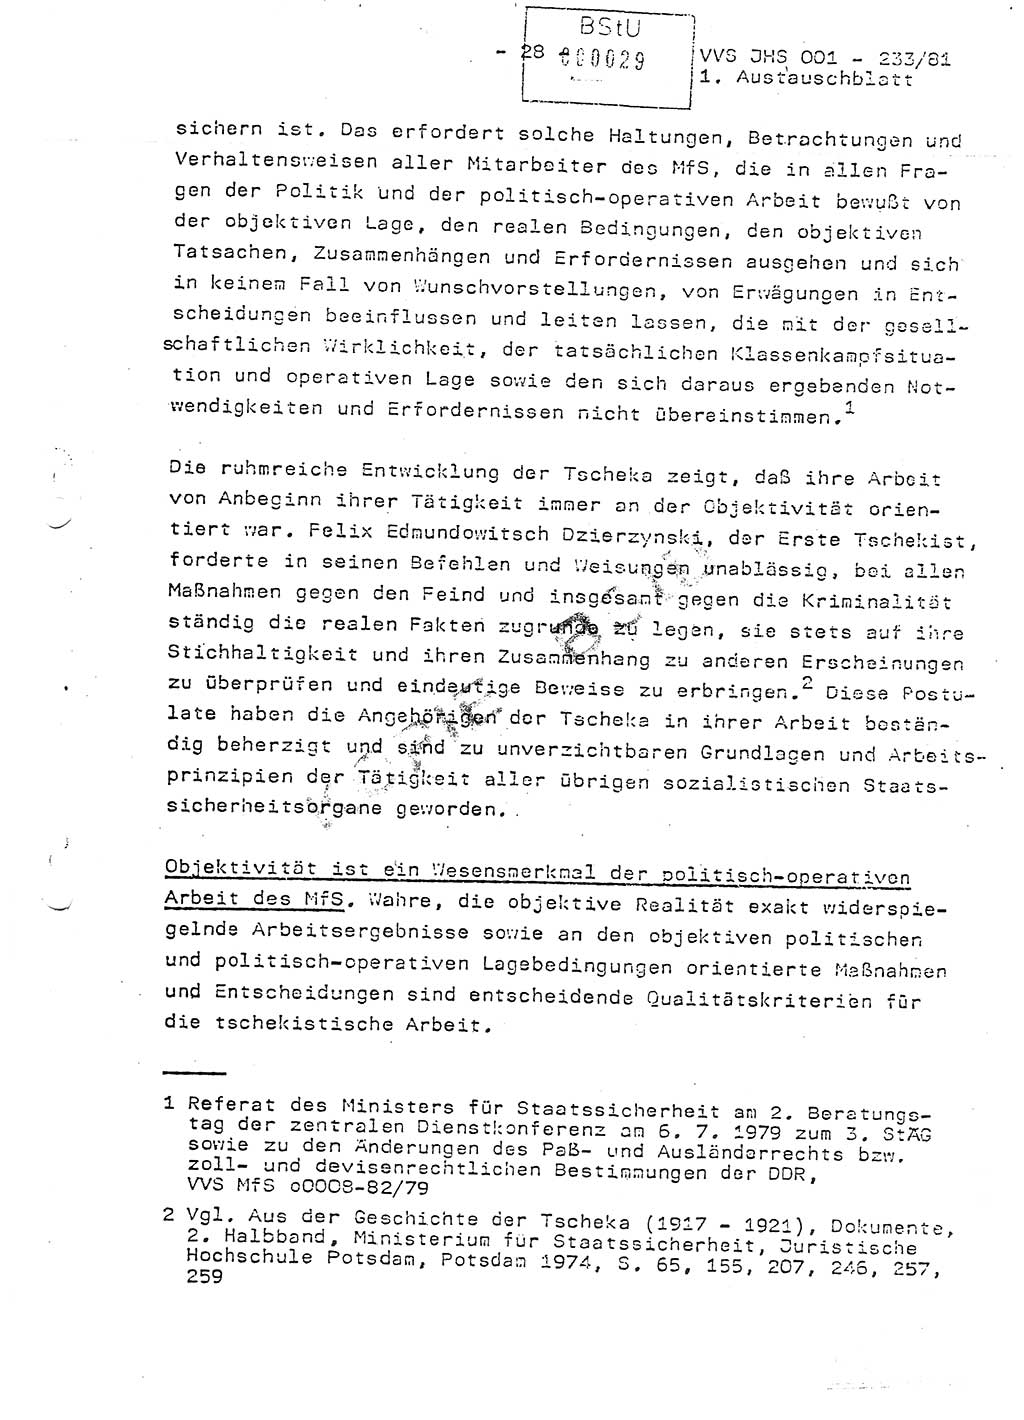 Dissertation Oberstleutnant Horst Zank (JHS), Oberstleutnant Dr. Karl-Heinz Knoblauch (JHS), Oberstleutnant Gustav-Adolf Kowalewski (HA Ⅸ), Oberstleutnant Wolfgang Plötner (HA Ⅸ), Ministerium für Staatssicherheit (MfS) [Deutsche Demokratische Republik (DDR)], Juristische Hochschule (JHS), Vertrauliche Verschlußsache (VVS) o001-233/81, Potsdam 1981, Blatt 29 (Diss. MfS DDR JHS VVS o001-233/81 1981, Bl. 29)